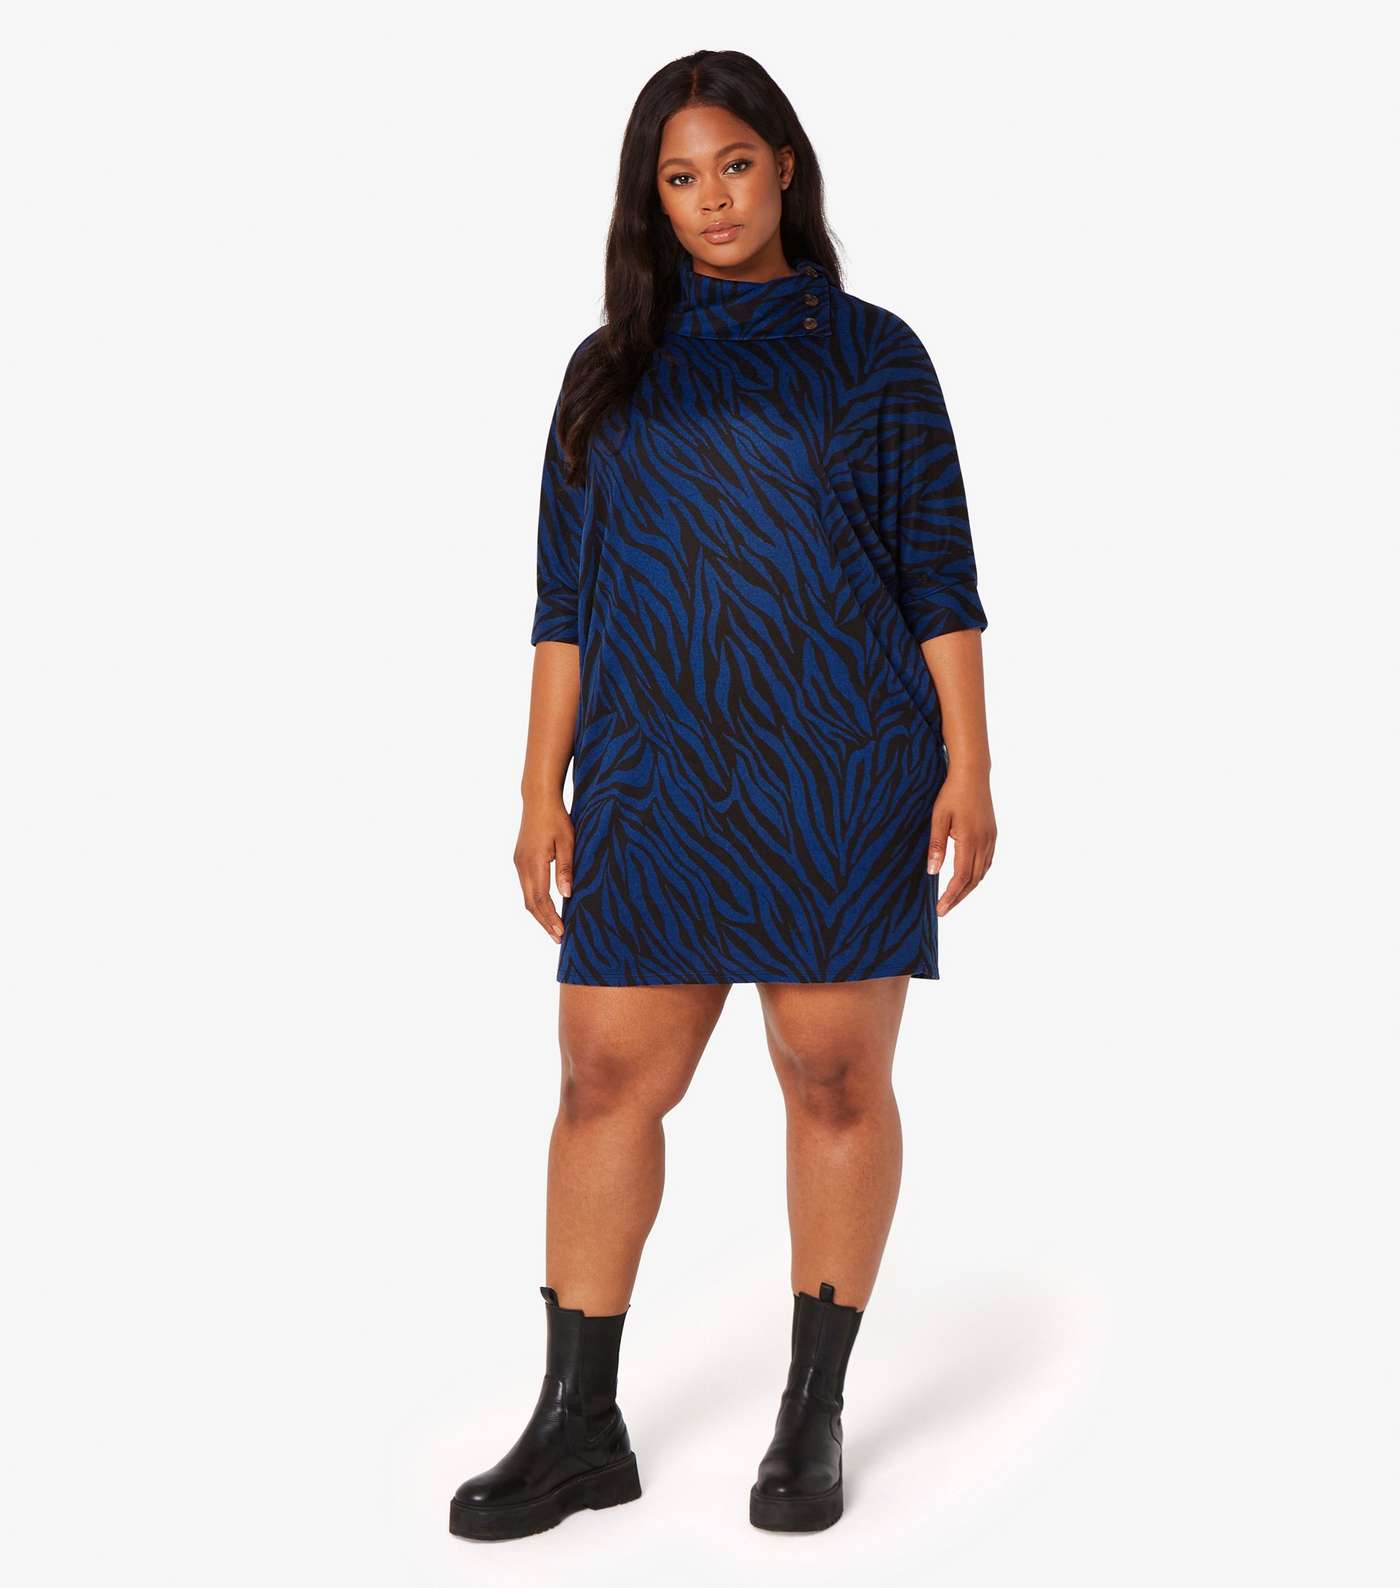 Apricot Curves Blue Zebra Print Mini Dress Image 2